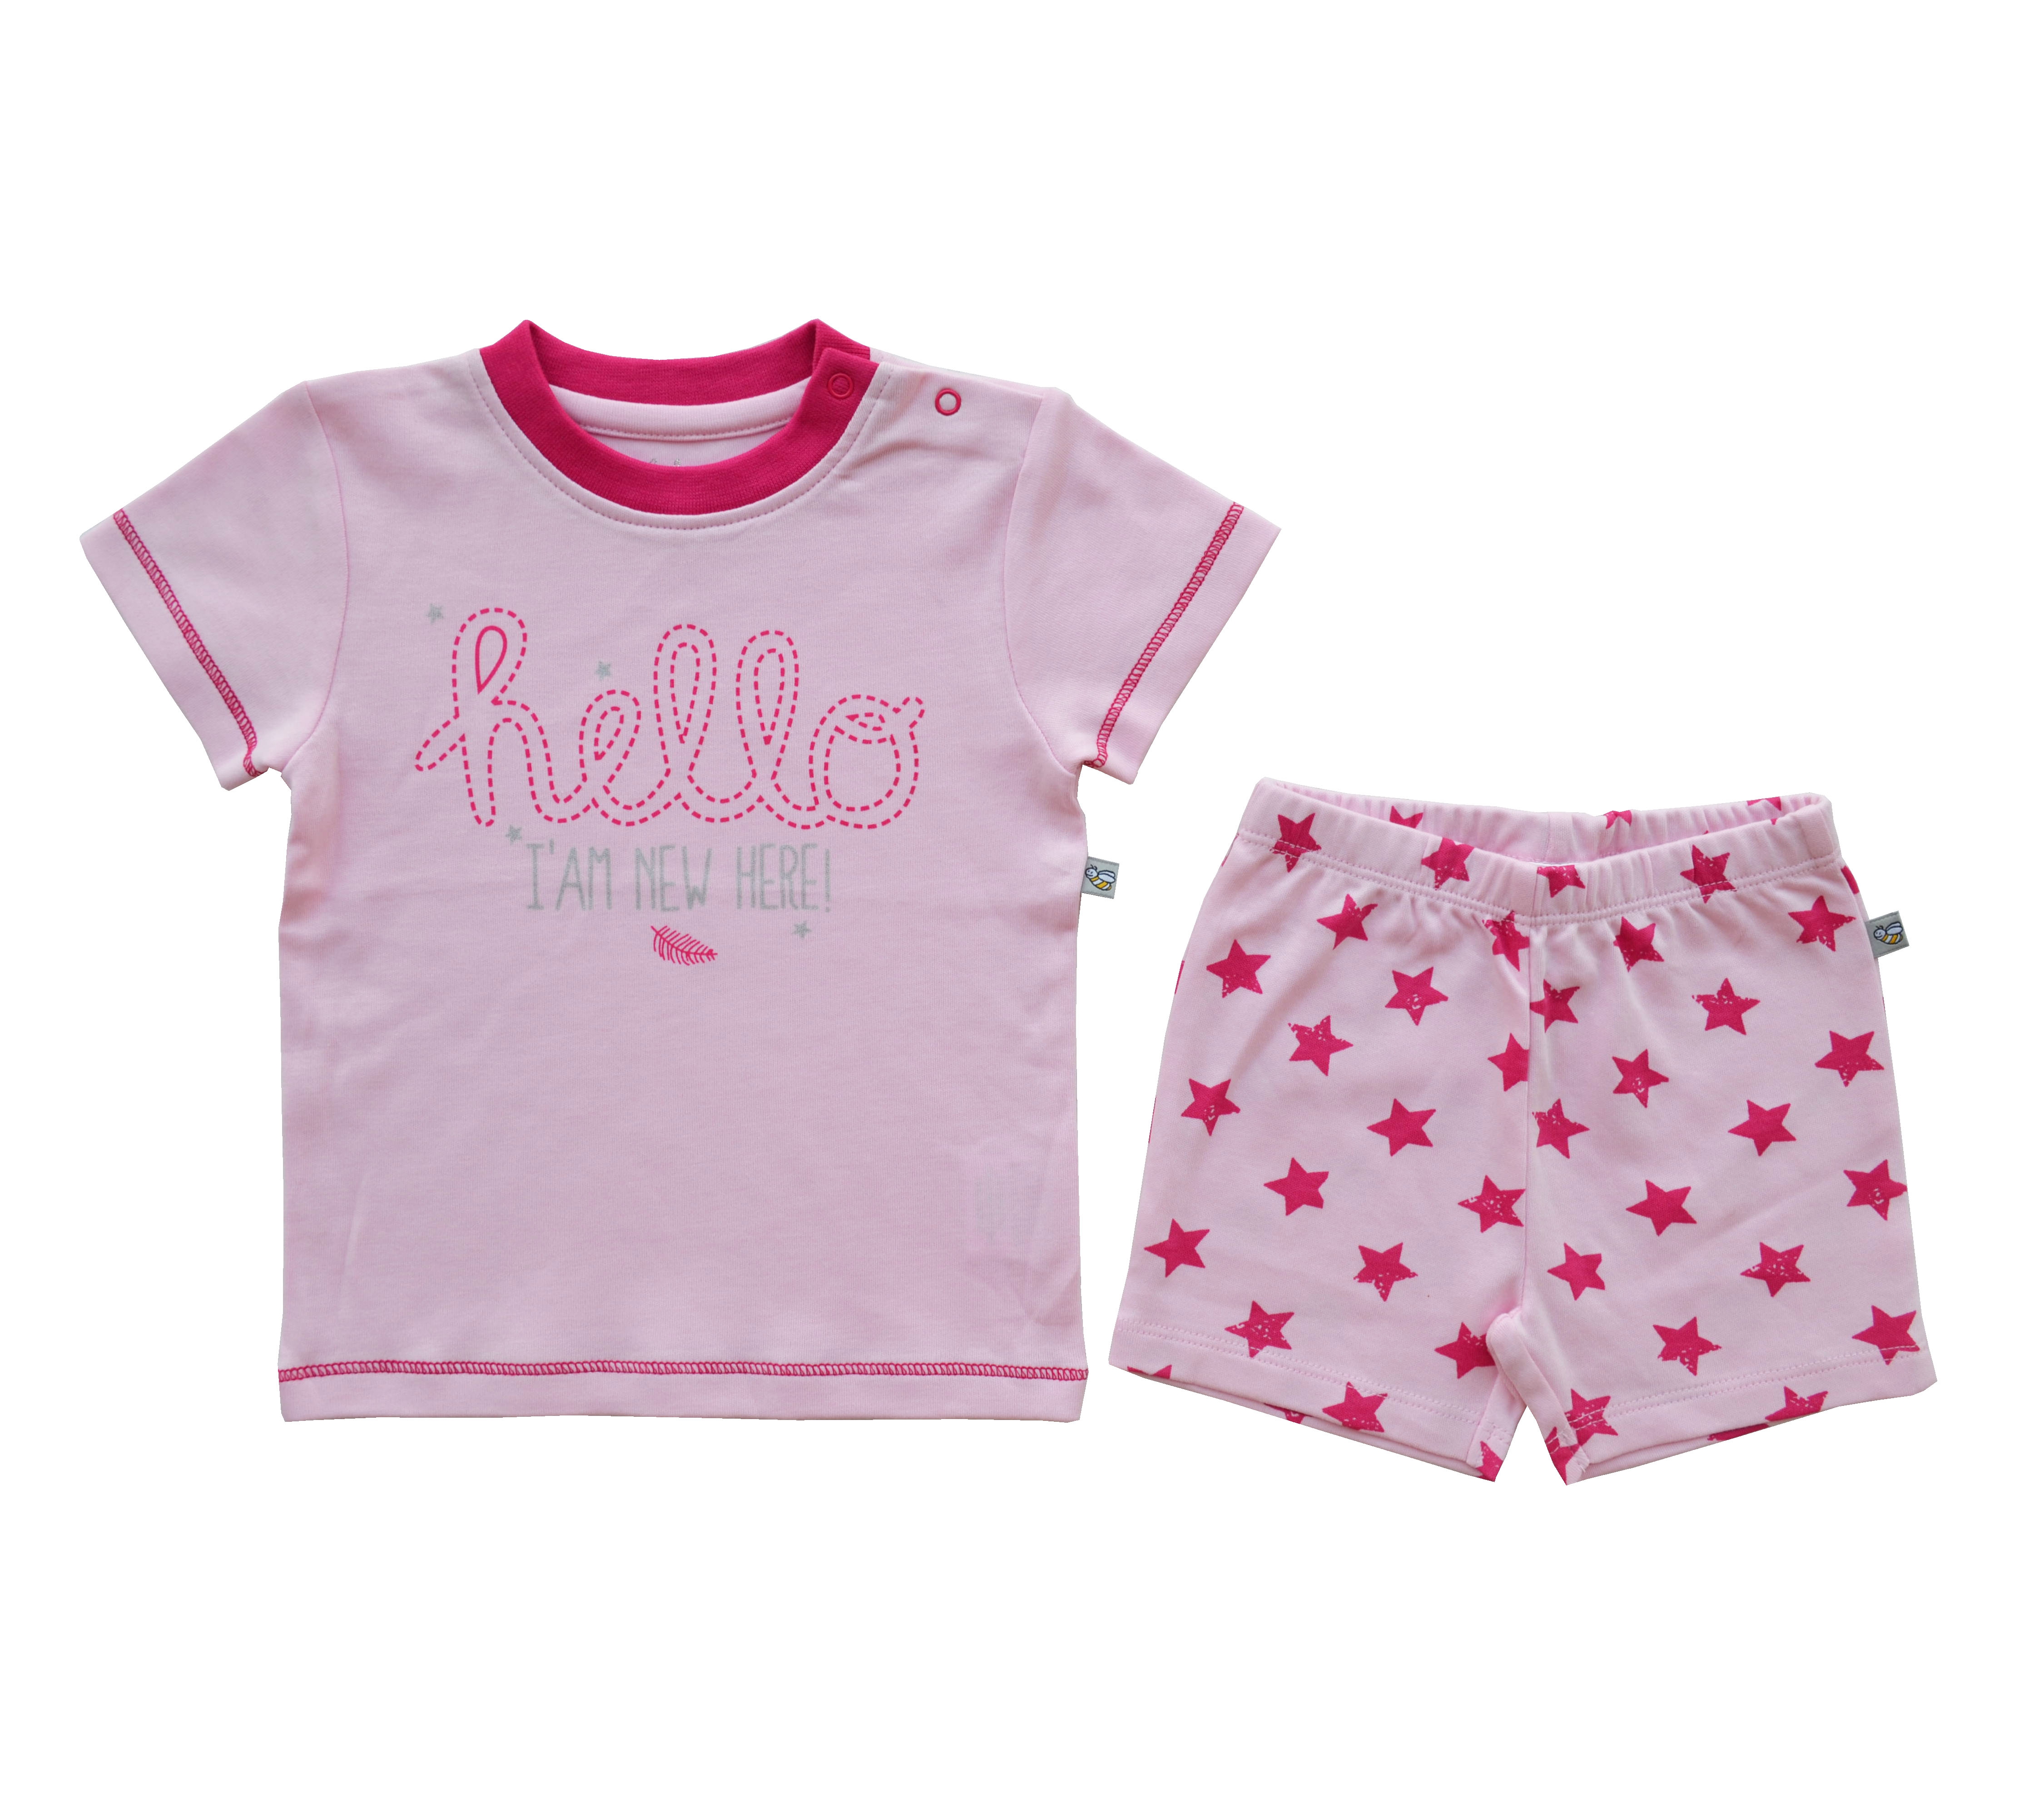 Babeez | Pink Hello Print T-Shirt + Allover Star Print Shorty Set (100% Cotton Interlock Biowash) undefined